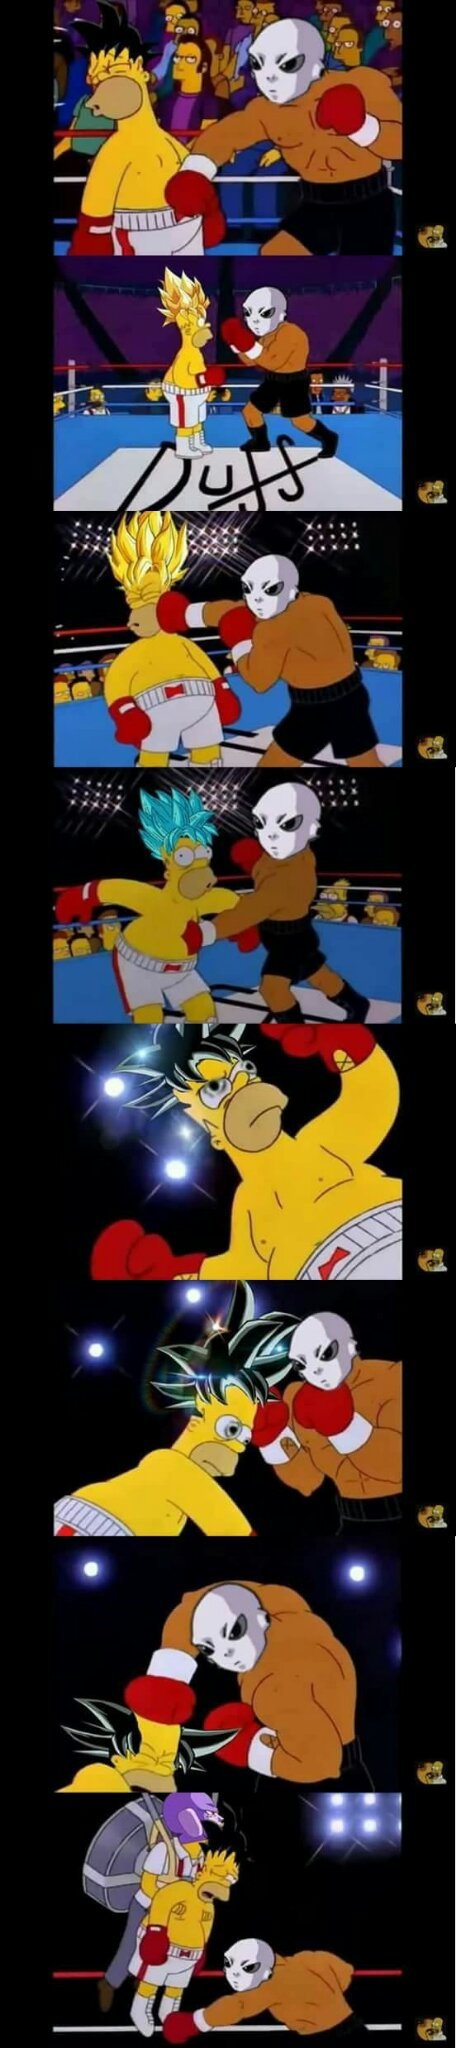 Resume de la pelea de goku vs jire xD - meme